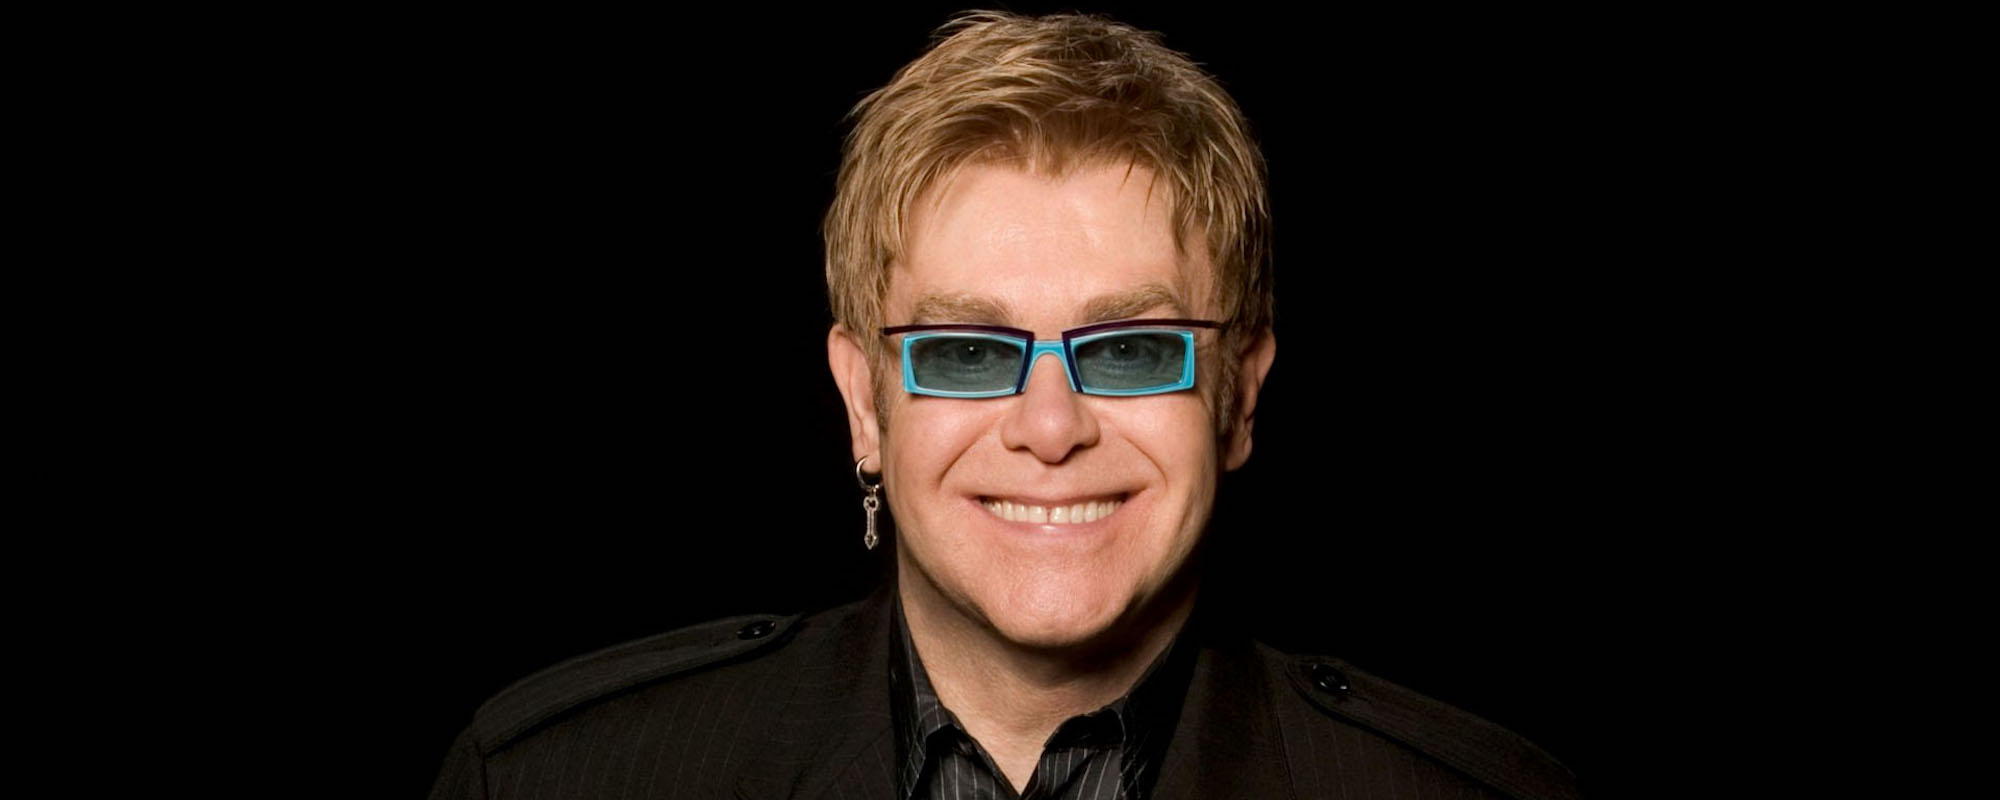 Rocket Man by Elton John - Songfacts